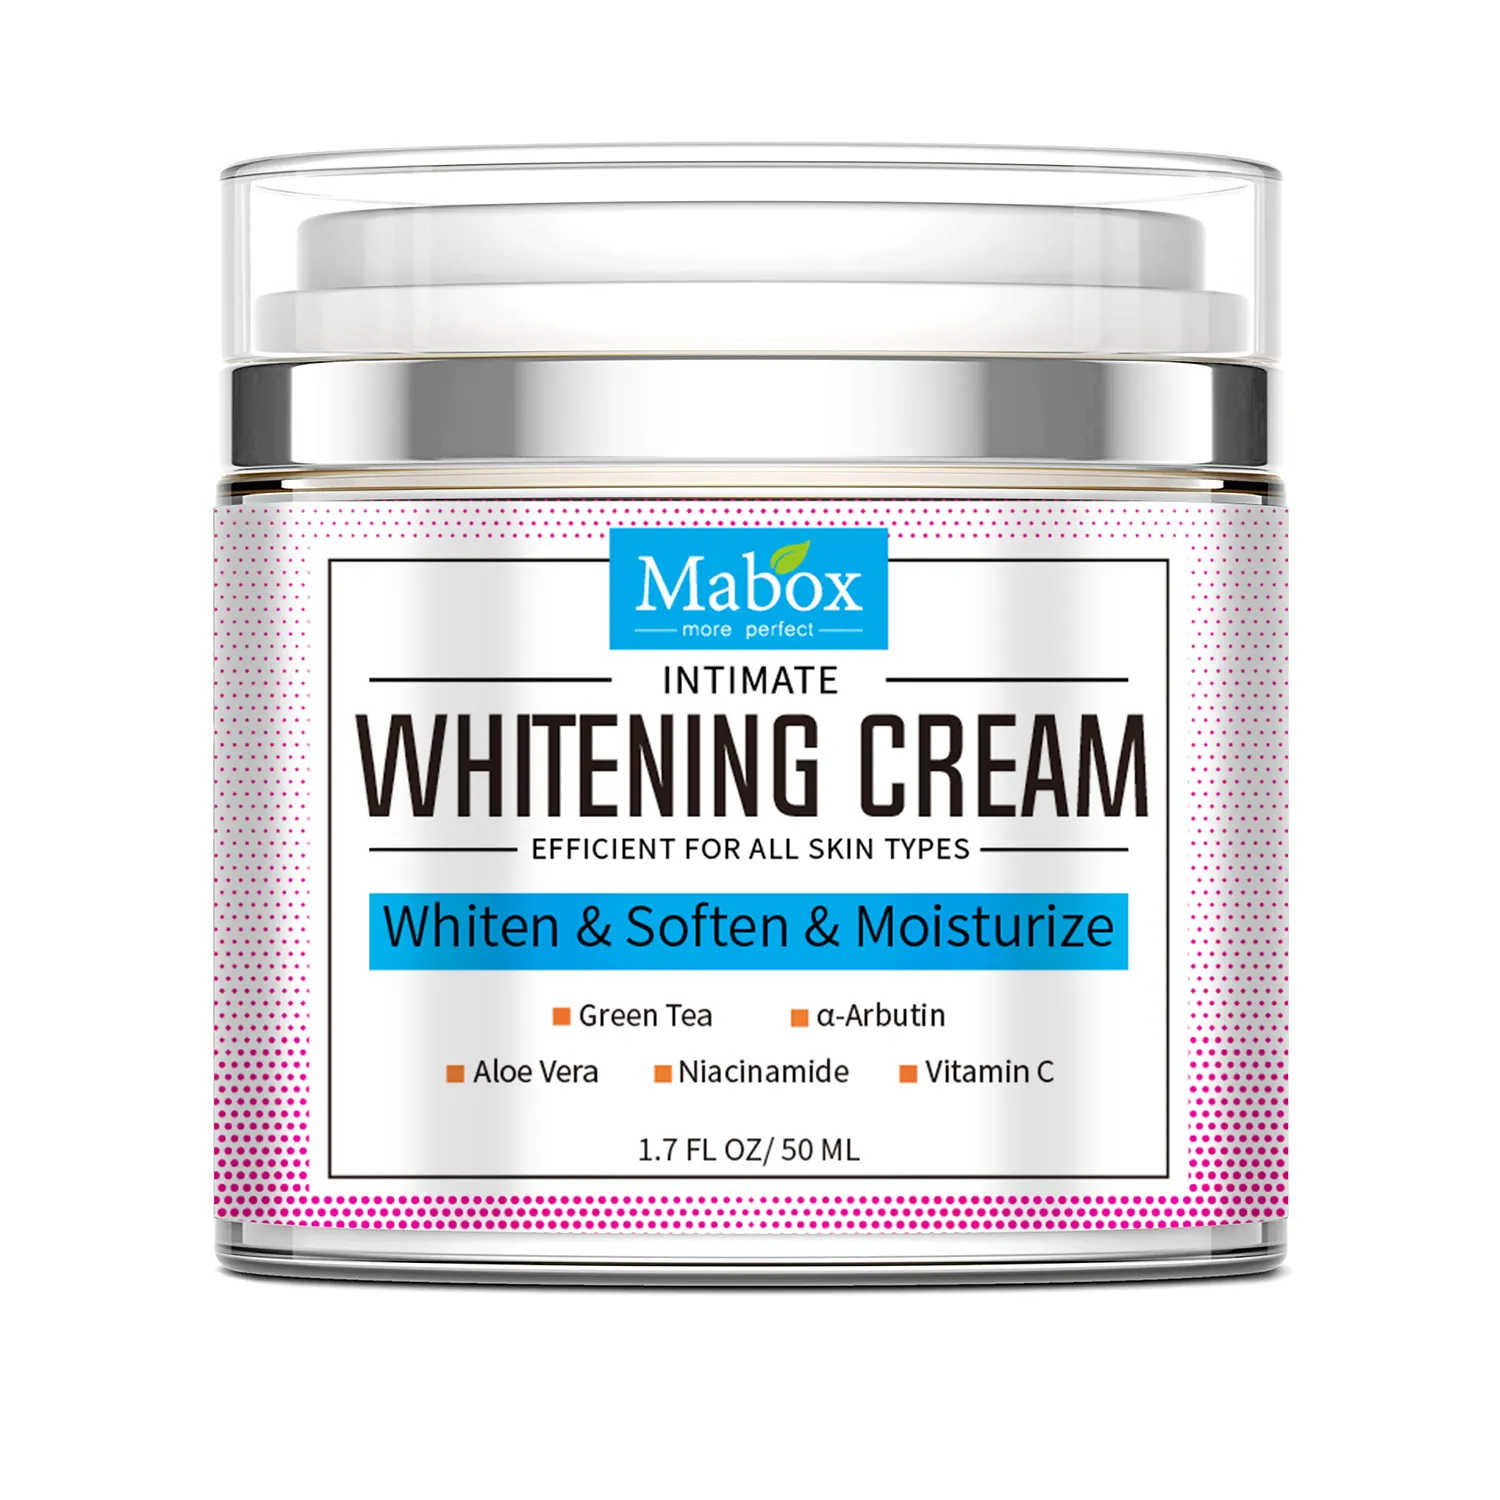 Bestseller Mabox Vitamin C Erweichen Feuchtigkeit spendende tägliche Hautpflege Intime Private Part White ning Cream